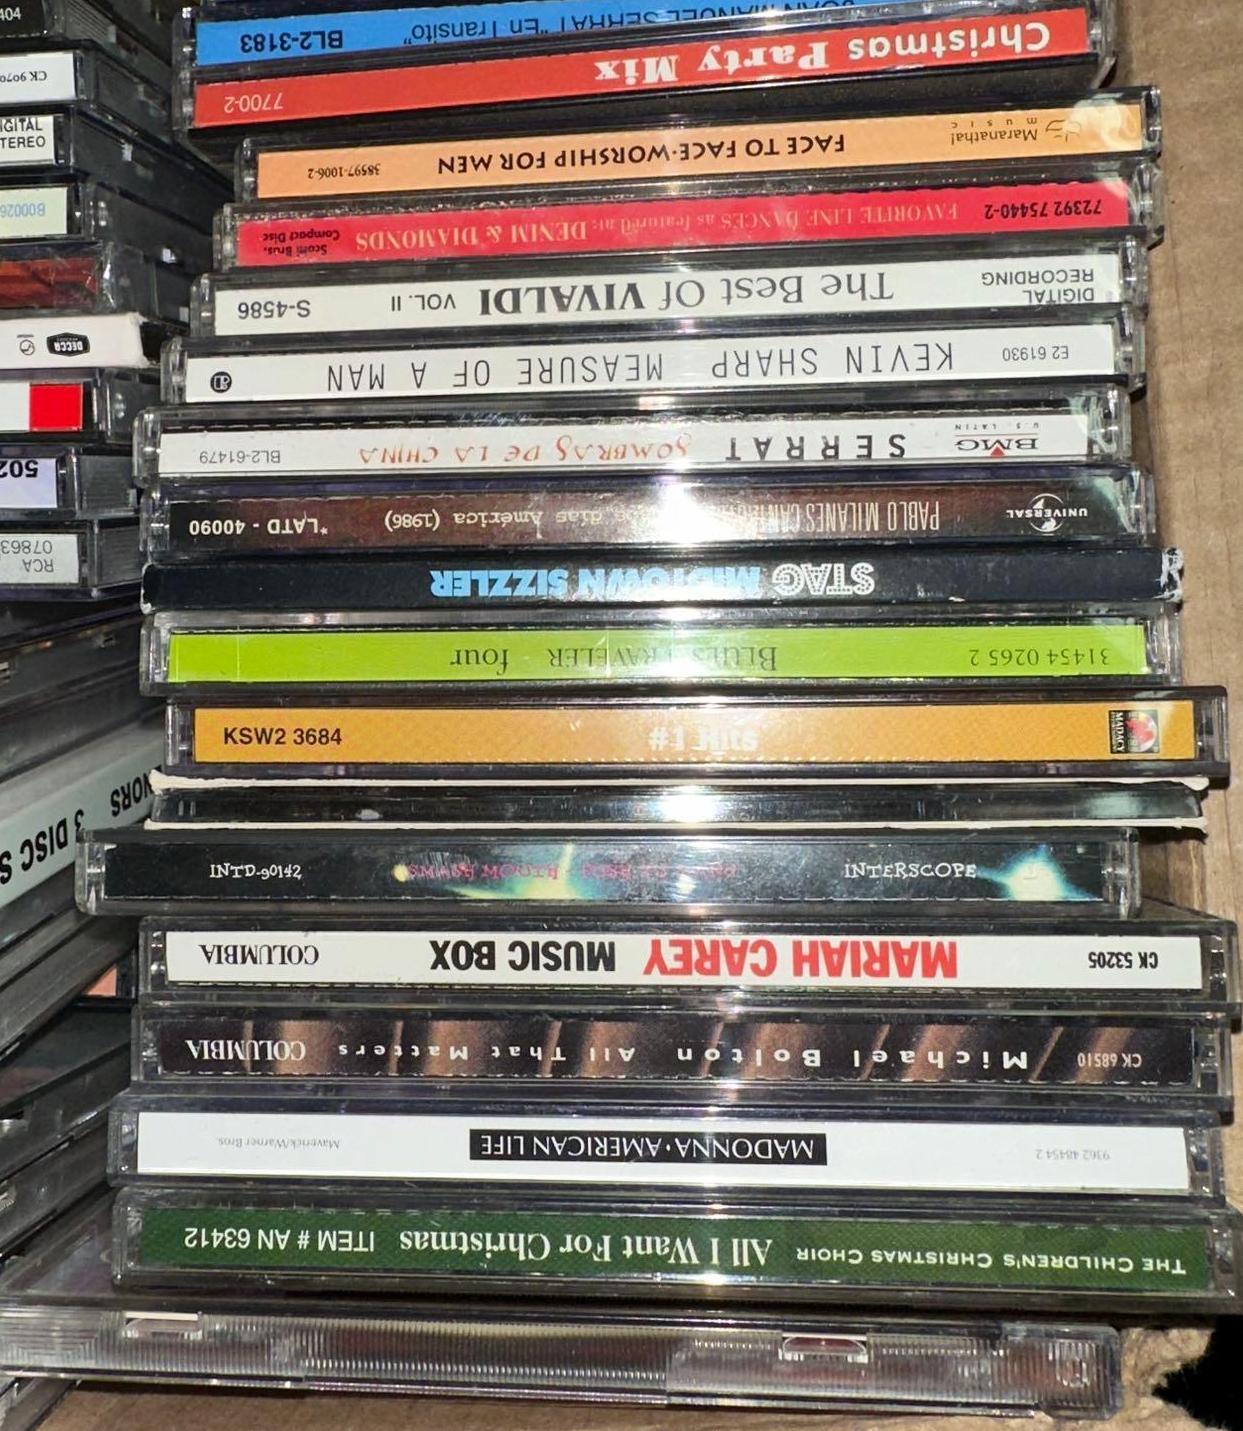 150+ CD's